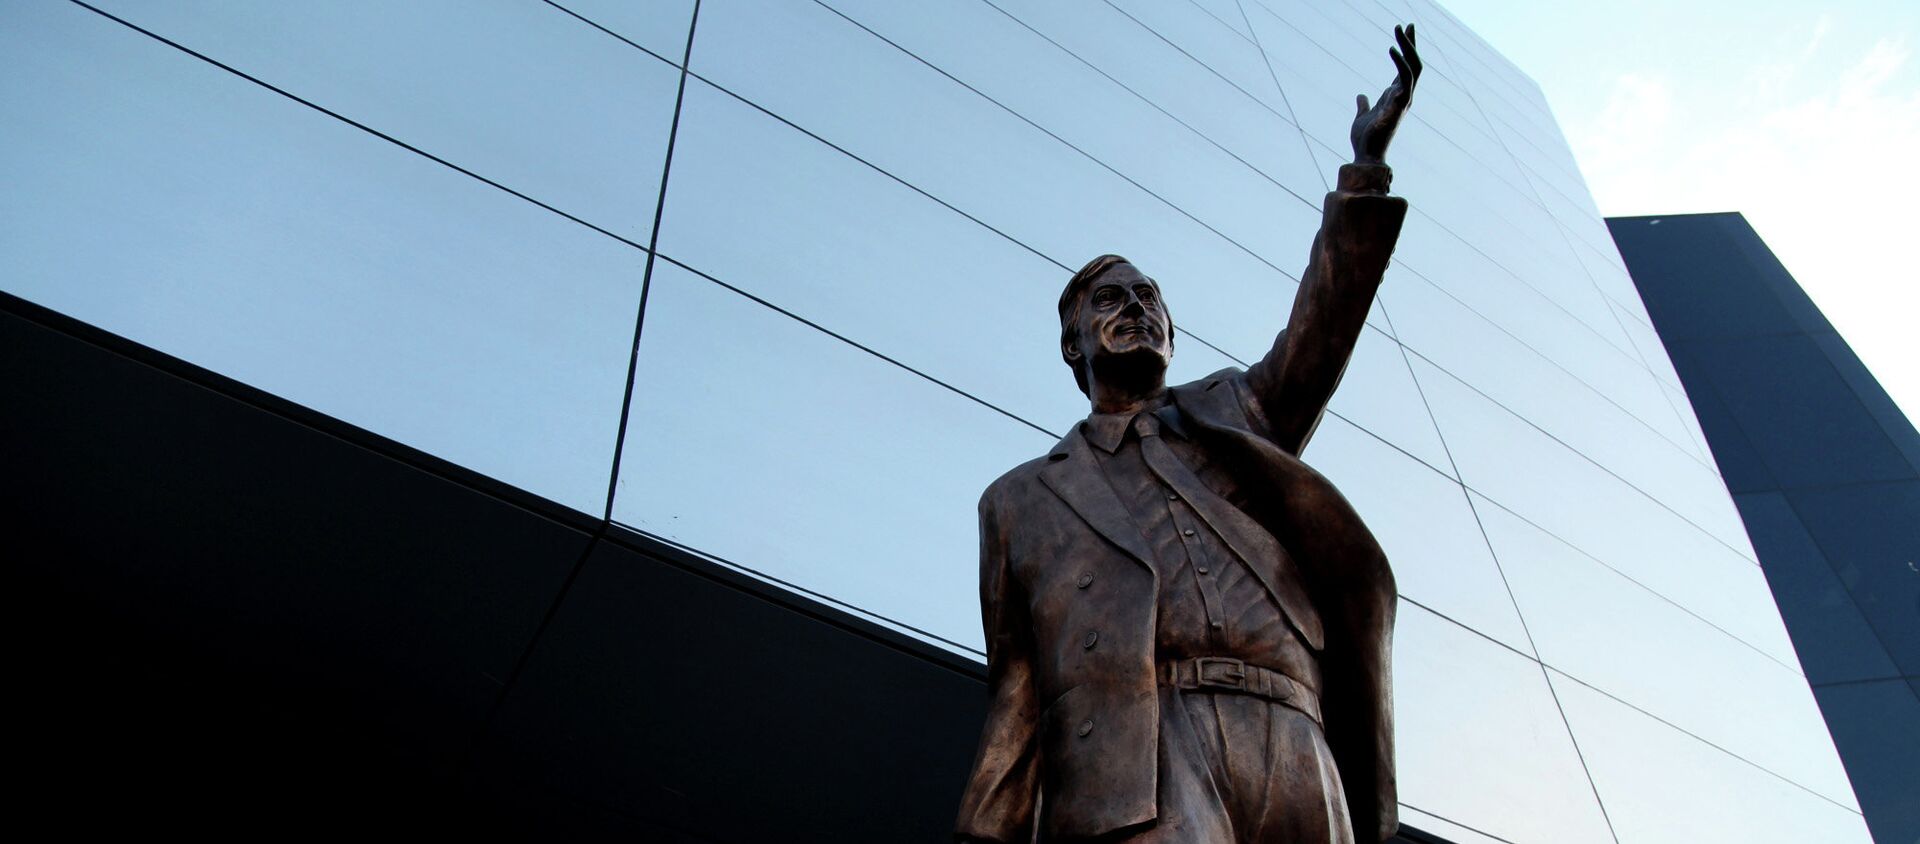 La estatua de Néstor Kirchner en la sede de la UNASUR - Sputnik Mundo, 1920, 26.10.2020